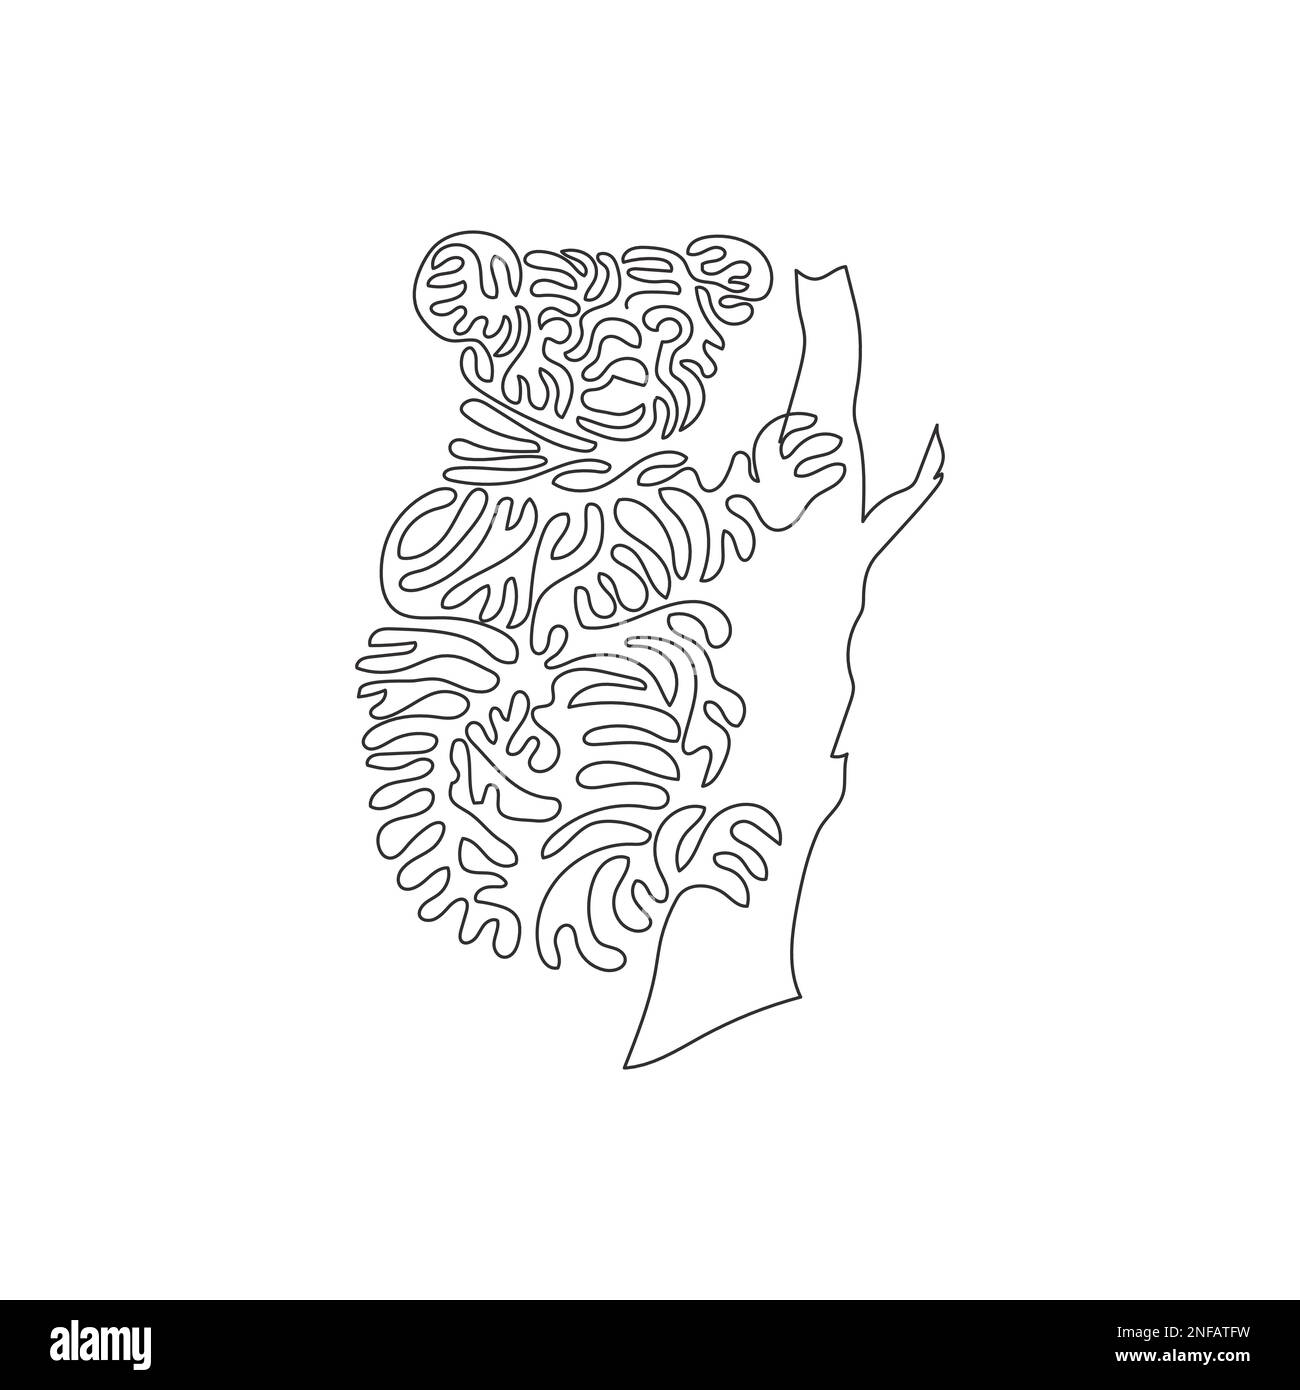 Eine einzelne geschwungene Zeichnung süßer abstrakter Koalas. Strichzeichnung mit kontinuierlichen Linien Vektor die Darstellung eines Koalas ist eine Baumwohnung Stock Vektor